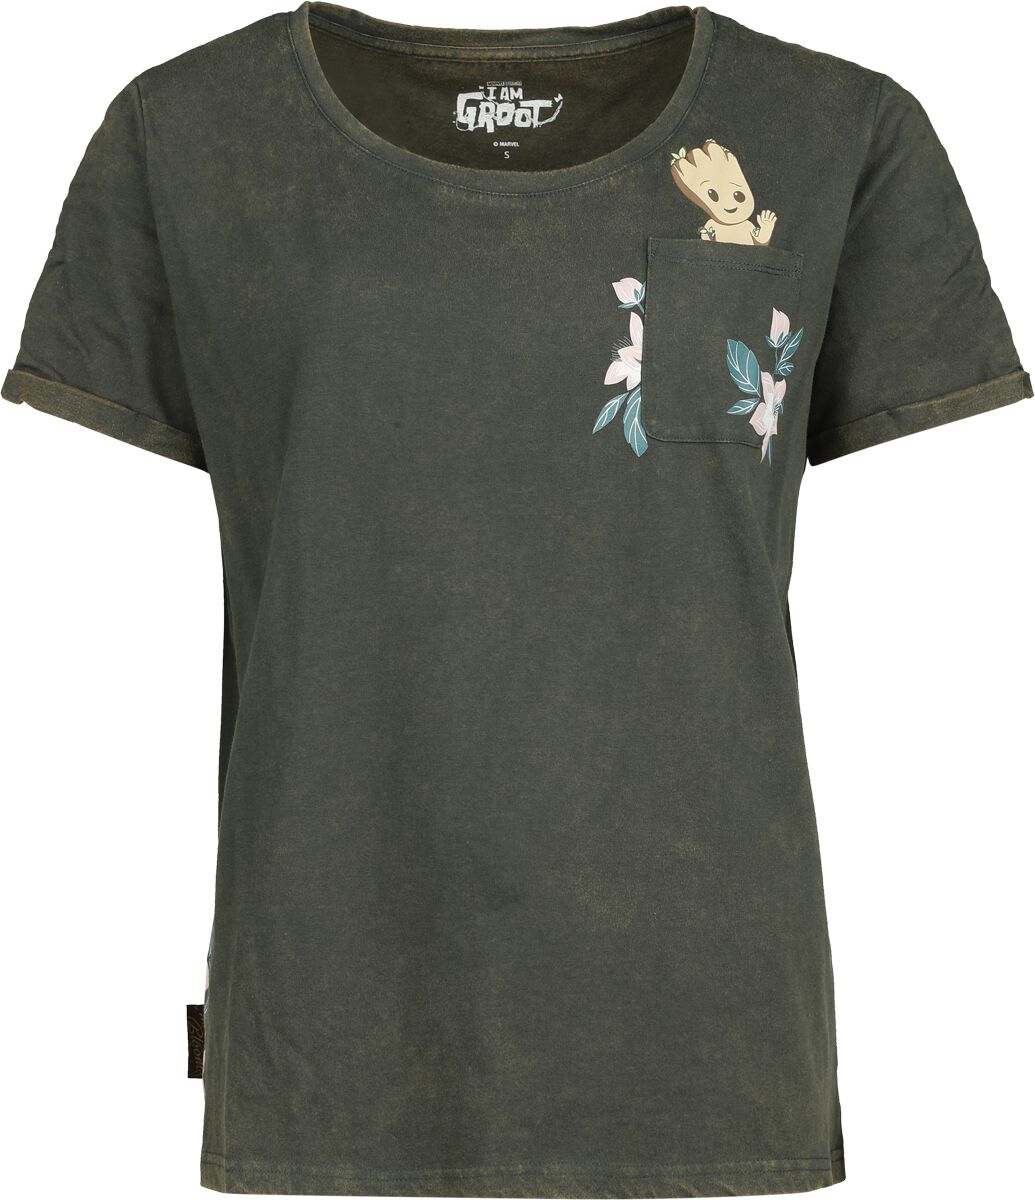 Guardians Of The Galaxy T-Shirt - Groot Floral - S bis XXL - für Damen - Größe M - dunkelgrün  - EMP exklusives Merchandise!